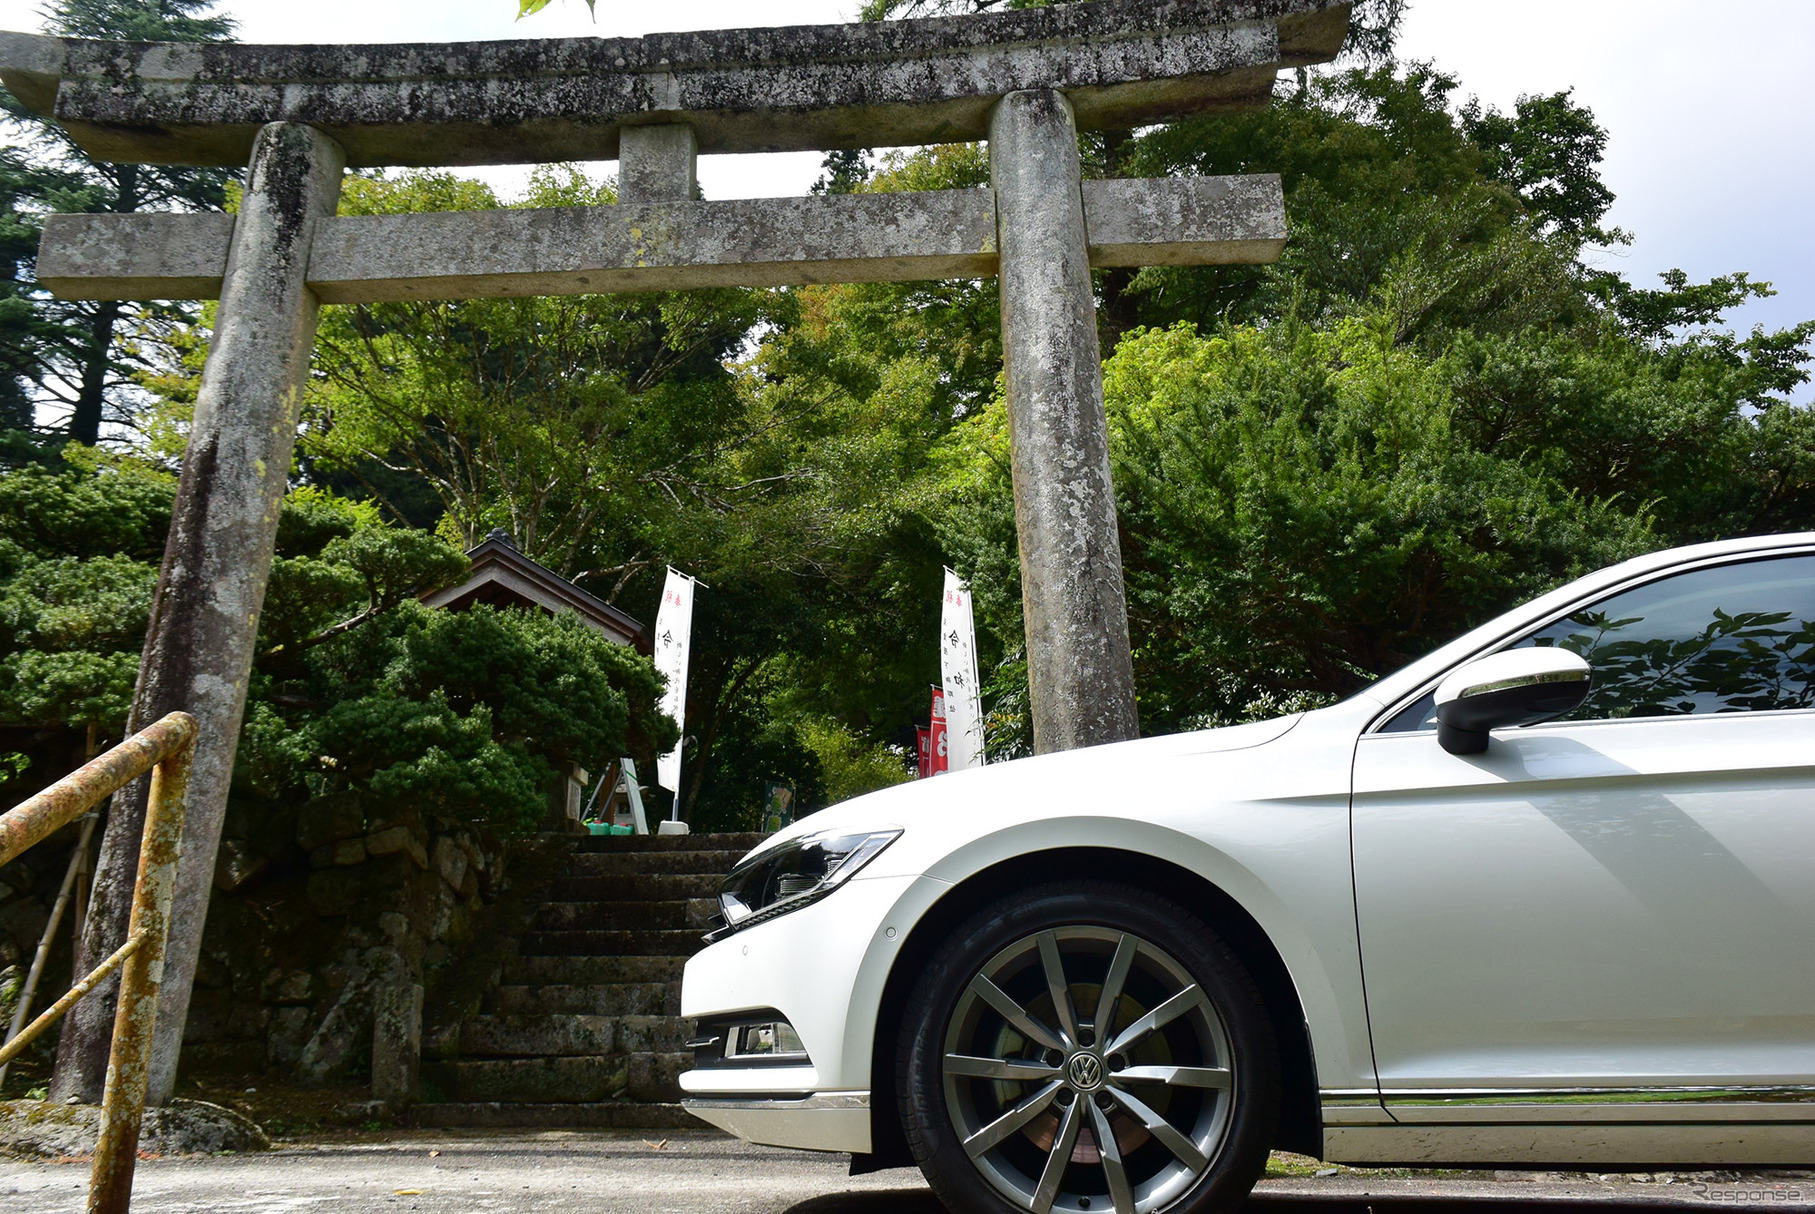 金持神社からしばらく走ったところにある樂樂福(ささふく)神社にて。鳥取、島根の中国山地核心部は秘境的神社の宝庫。